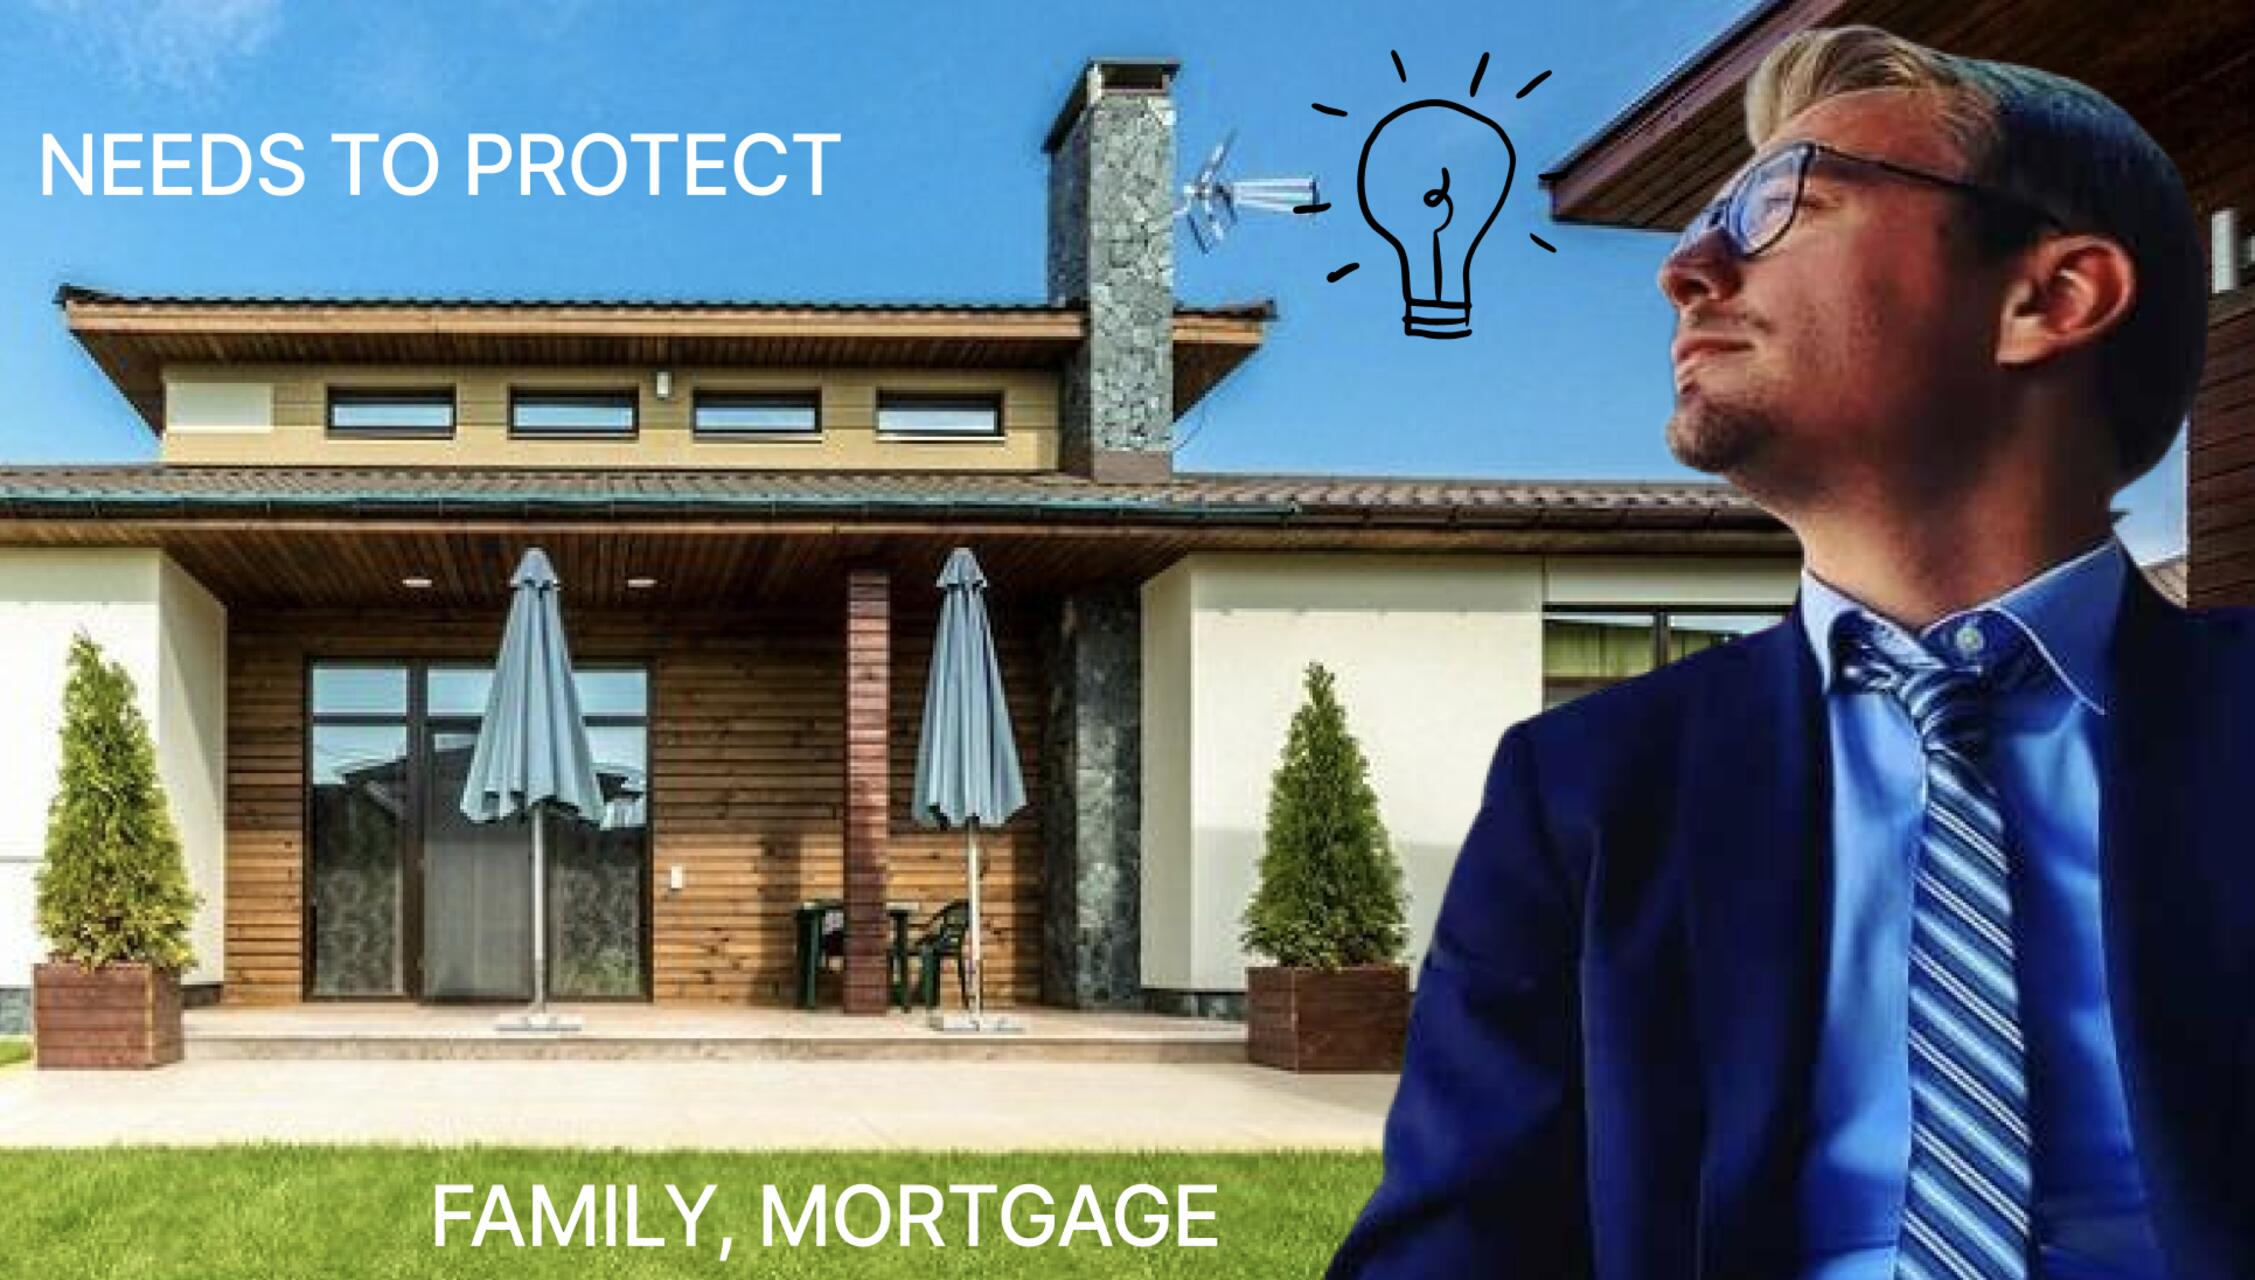 Embedded Insurance: la casa e la famiglia da tutelare